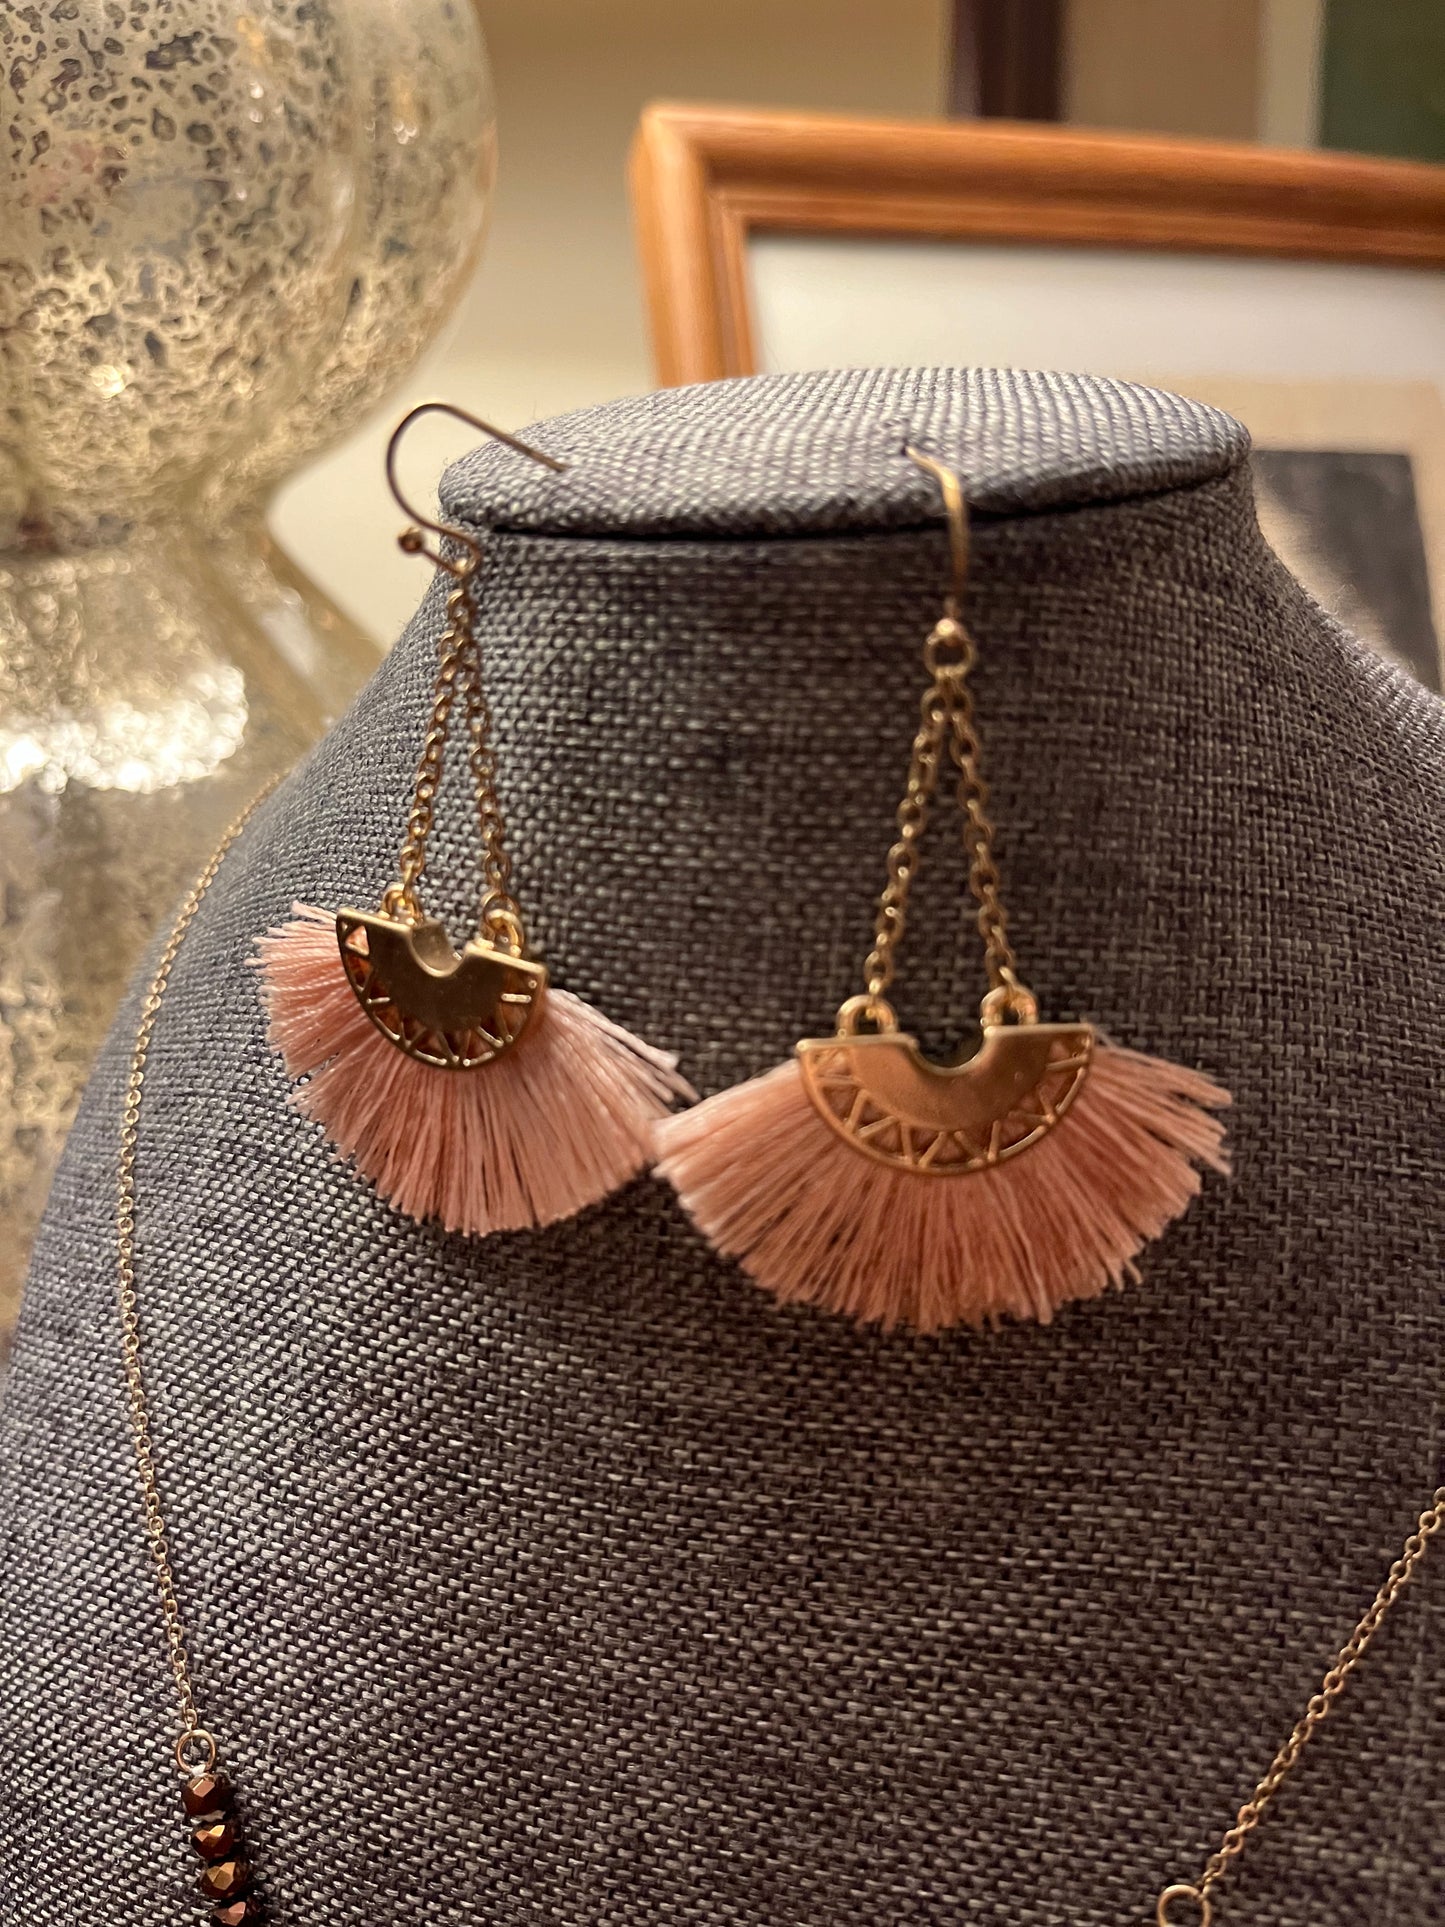 Copper & Threads Fan Pendant Necklace & Earring Set